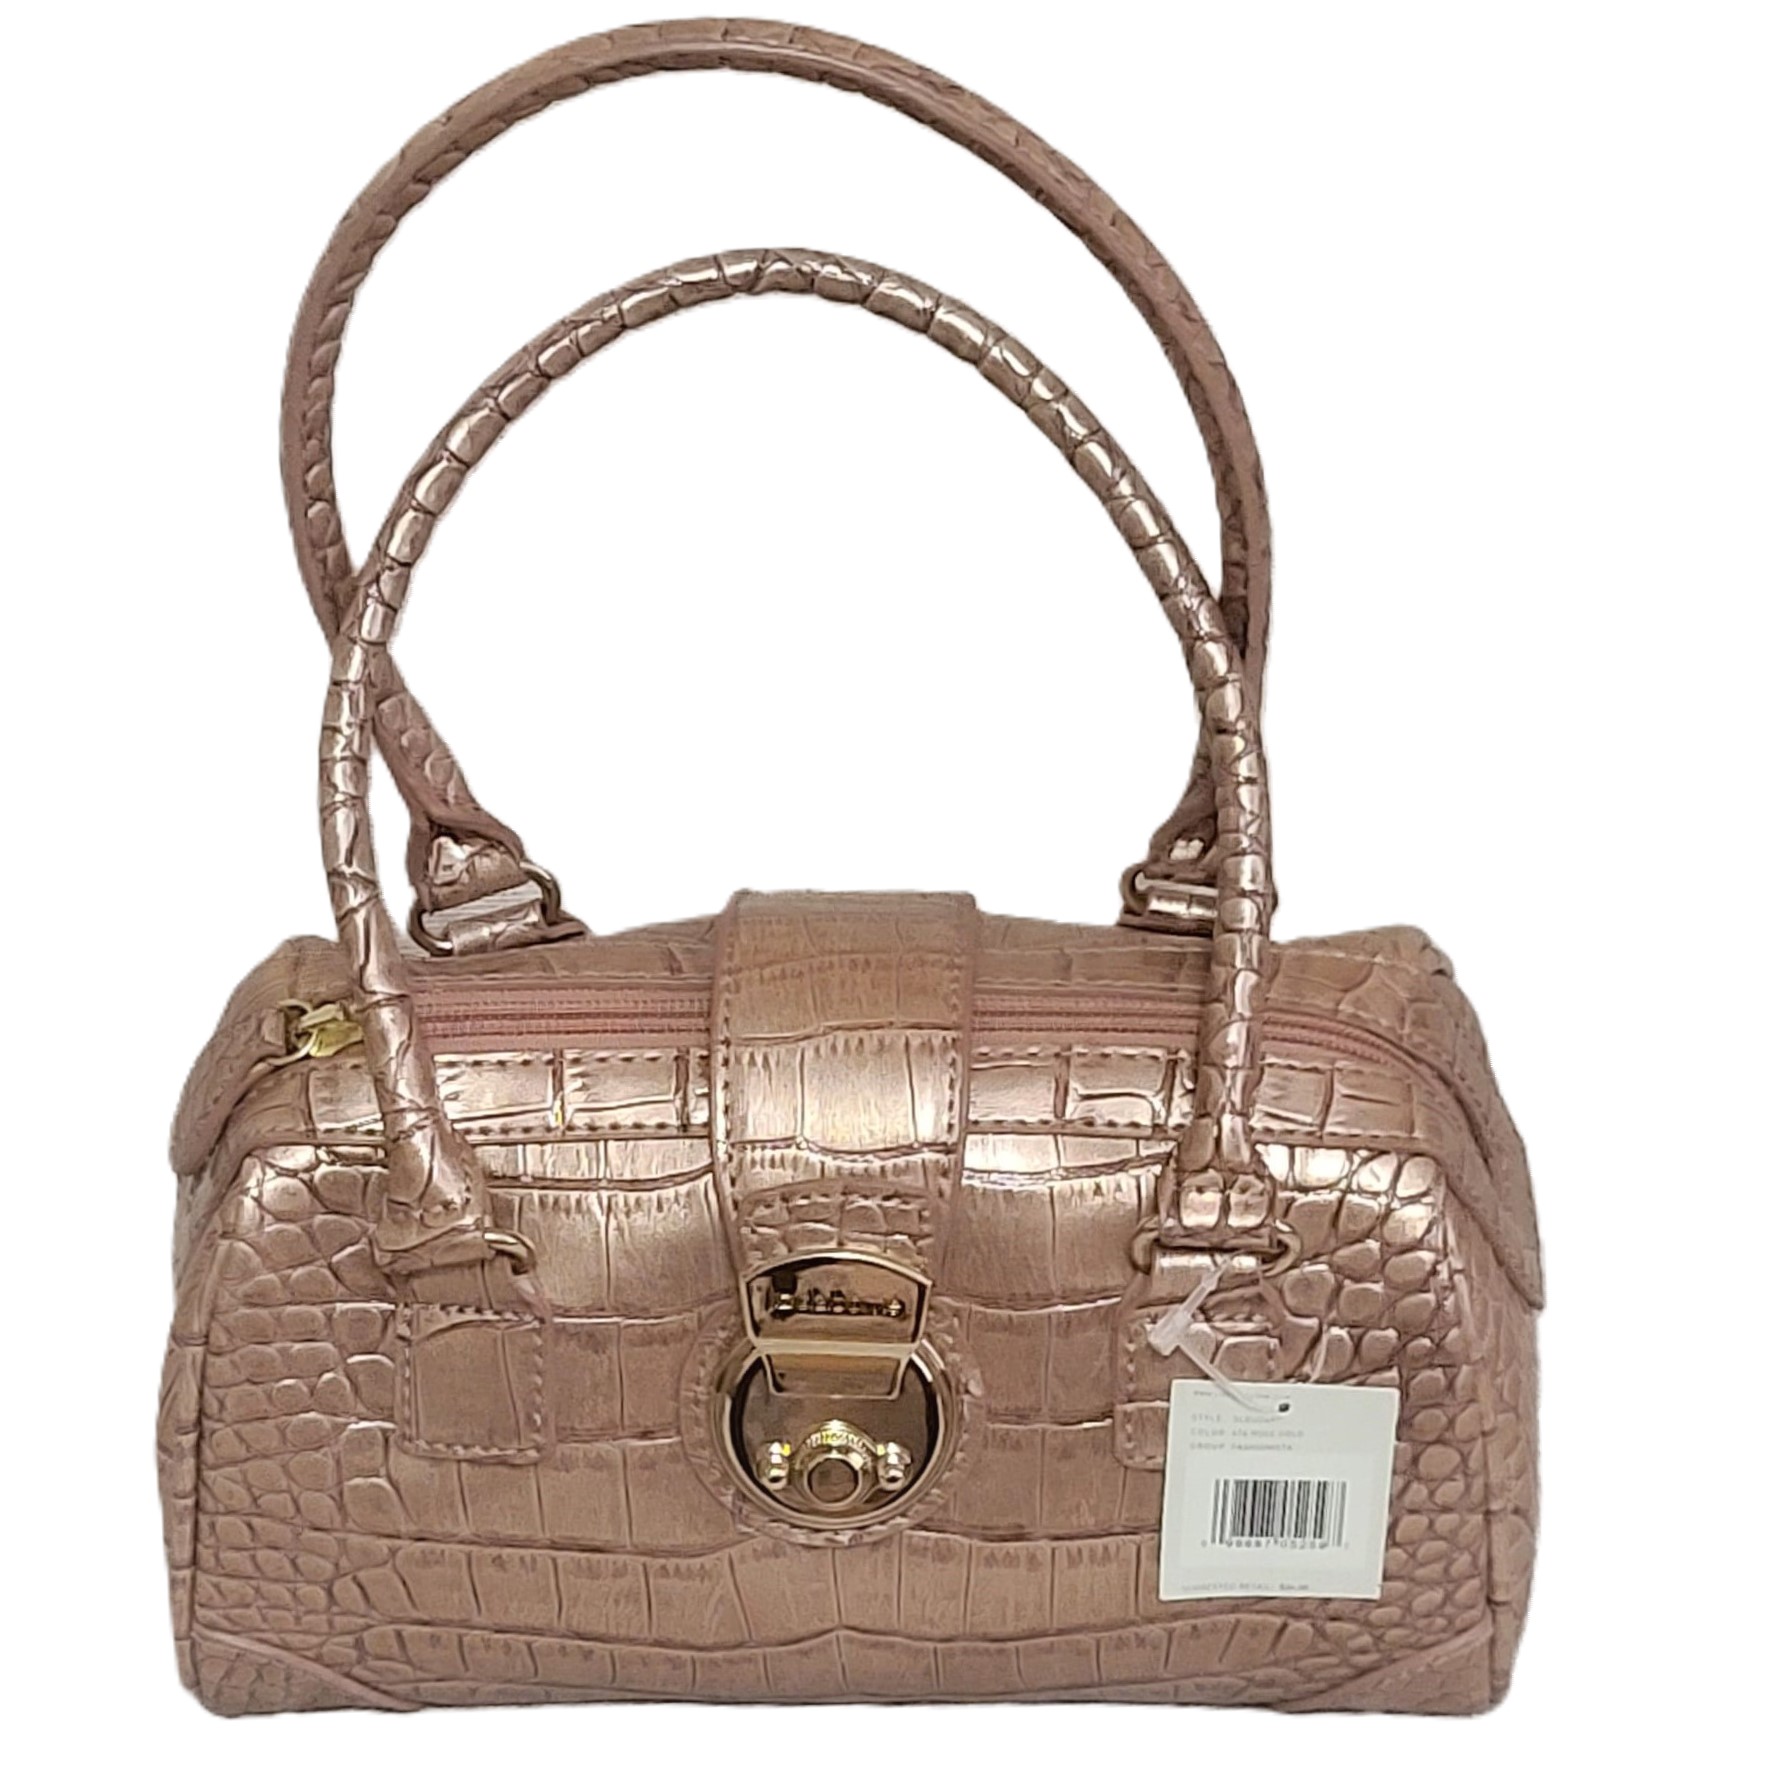 Liz Claiborne Pearlized Croc Handbag NWT - Click Image to Close